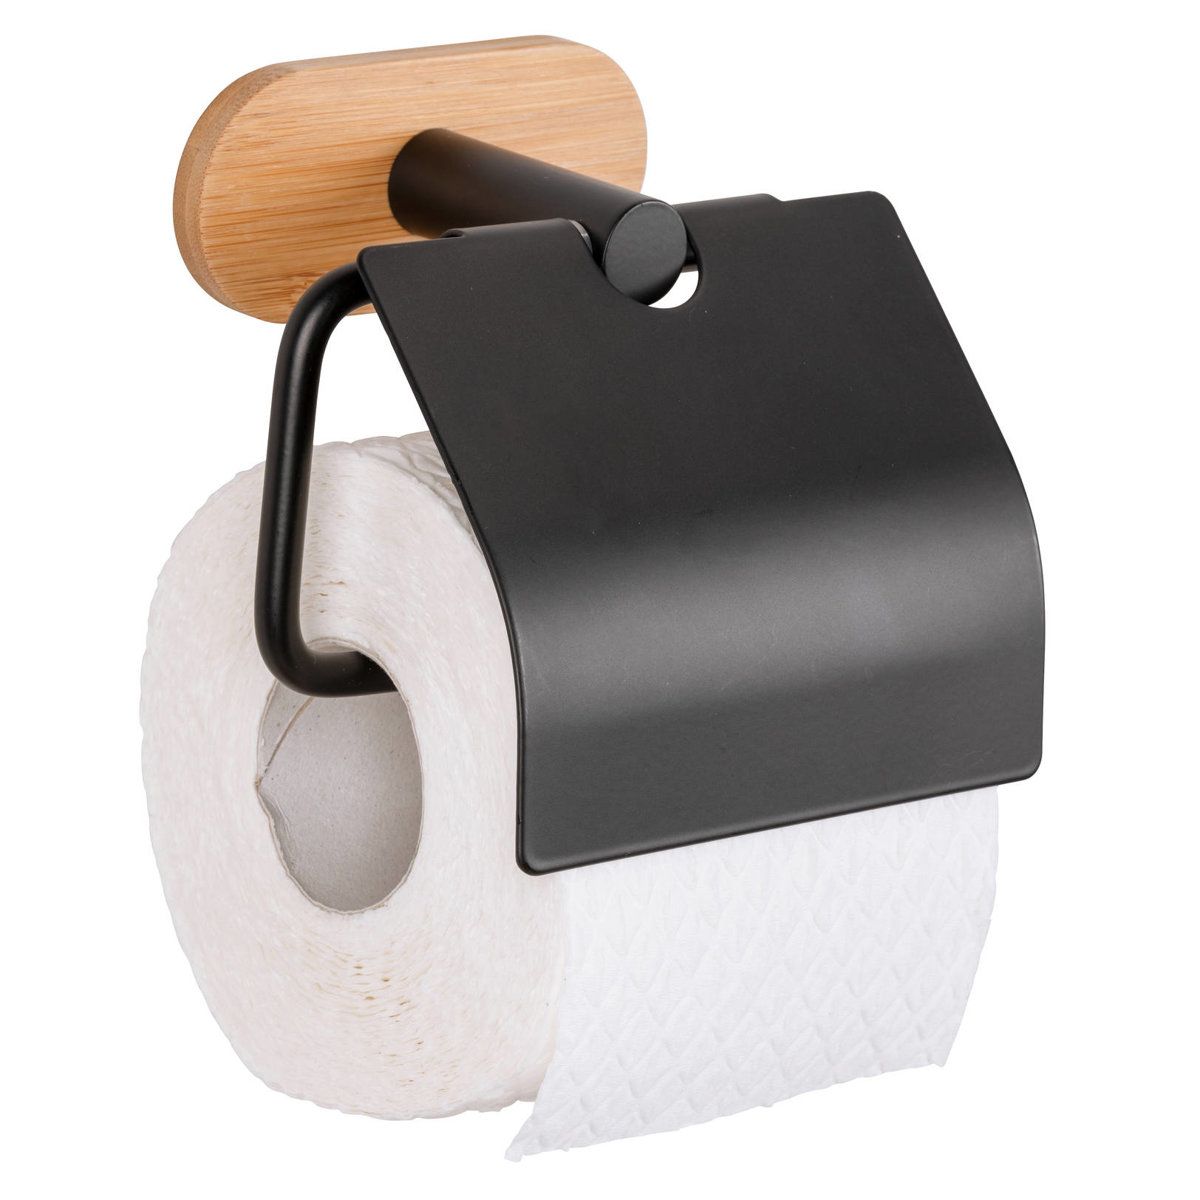 Držák na toaletní papír s víkem OREA, Turbo-Loc, WENKO - EMAKO.CZ s.r.o.